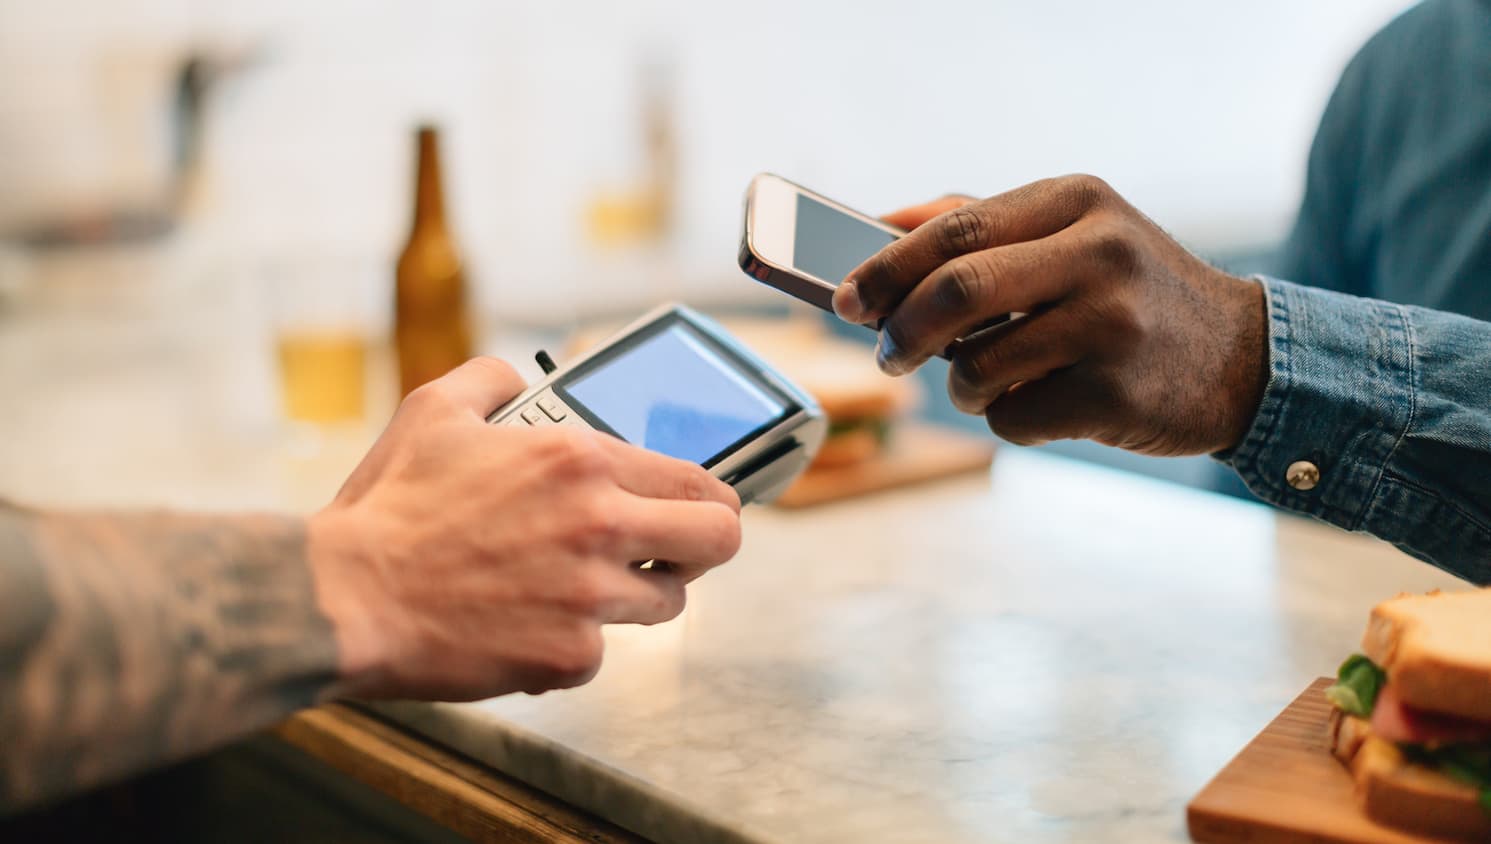 Je lunch met een mobiele wallet betalen is maar een van de manieren waarop mobiele technologie de customer experience verandert. [@BONNINSTUDIO/Stocksy United]